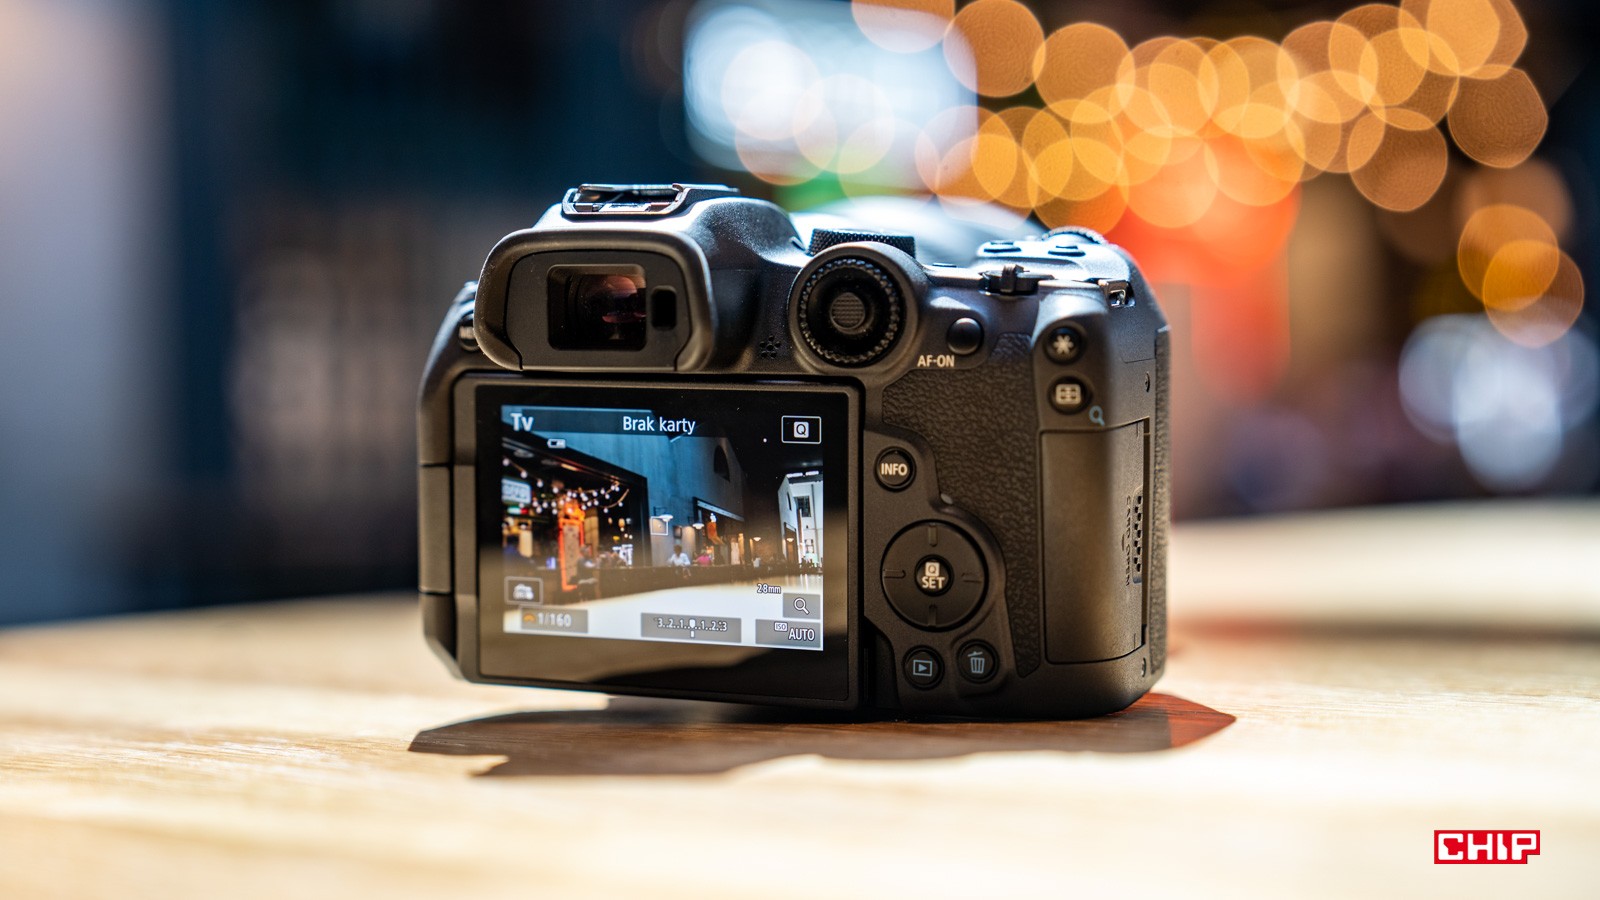 Kupujemy pierwszy aparat fotograficzny – na co zwrócić uwagę? Poradnik dla początkujących